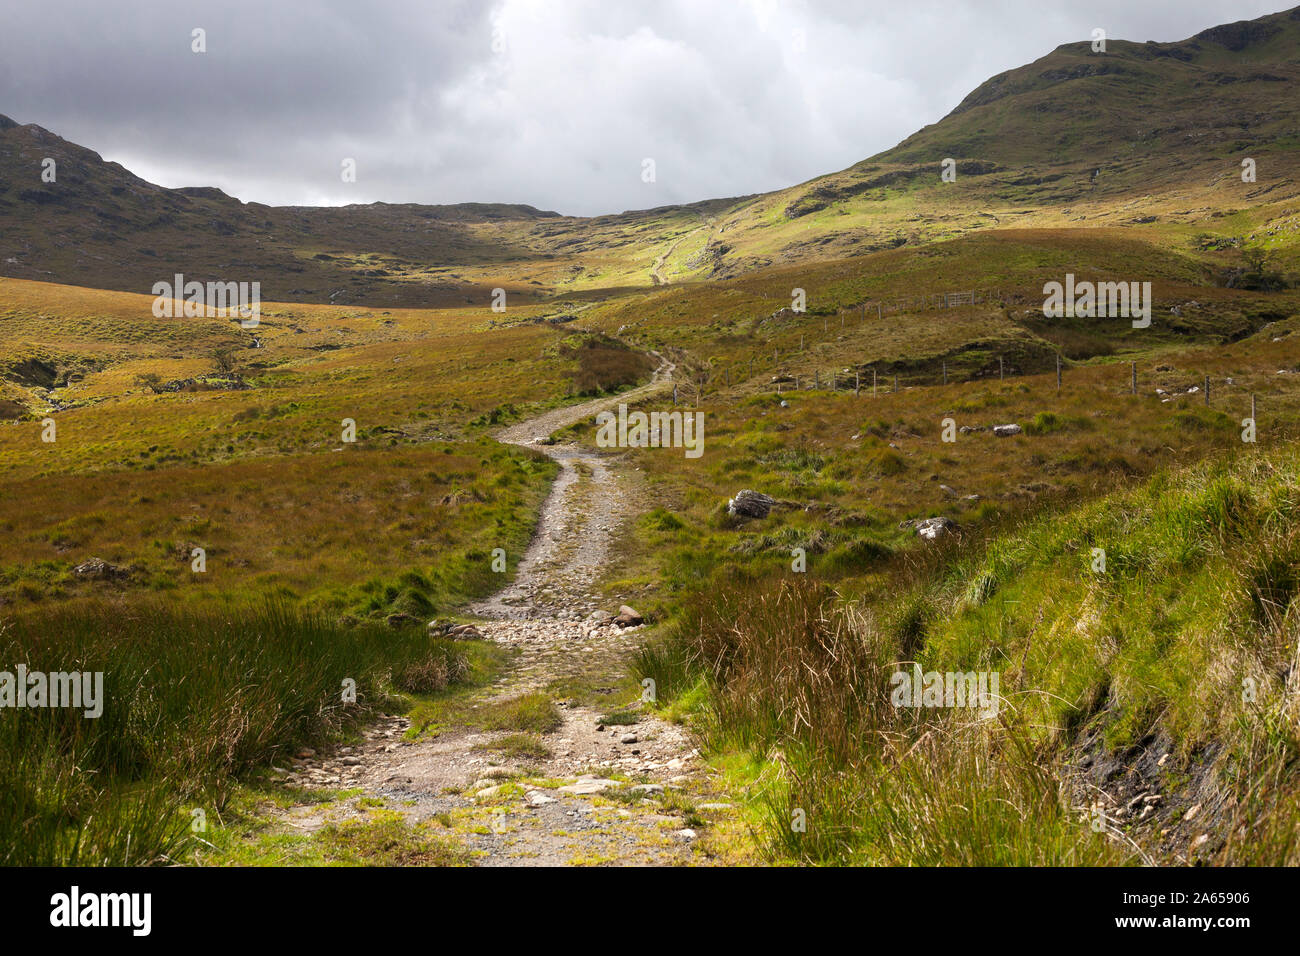 Irland, im County Galway: Wanderweg, Teil der westlichen Weg zur Mámean, Wallfahrtsort St. Patrick gewidmet ist. Landschaft der Maumturks Stockfoto